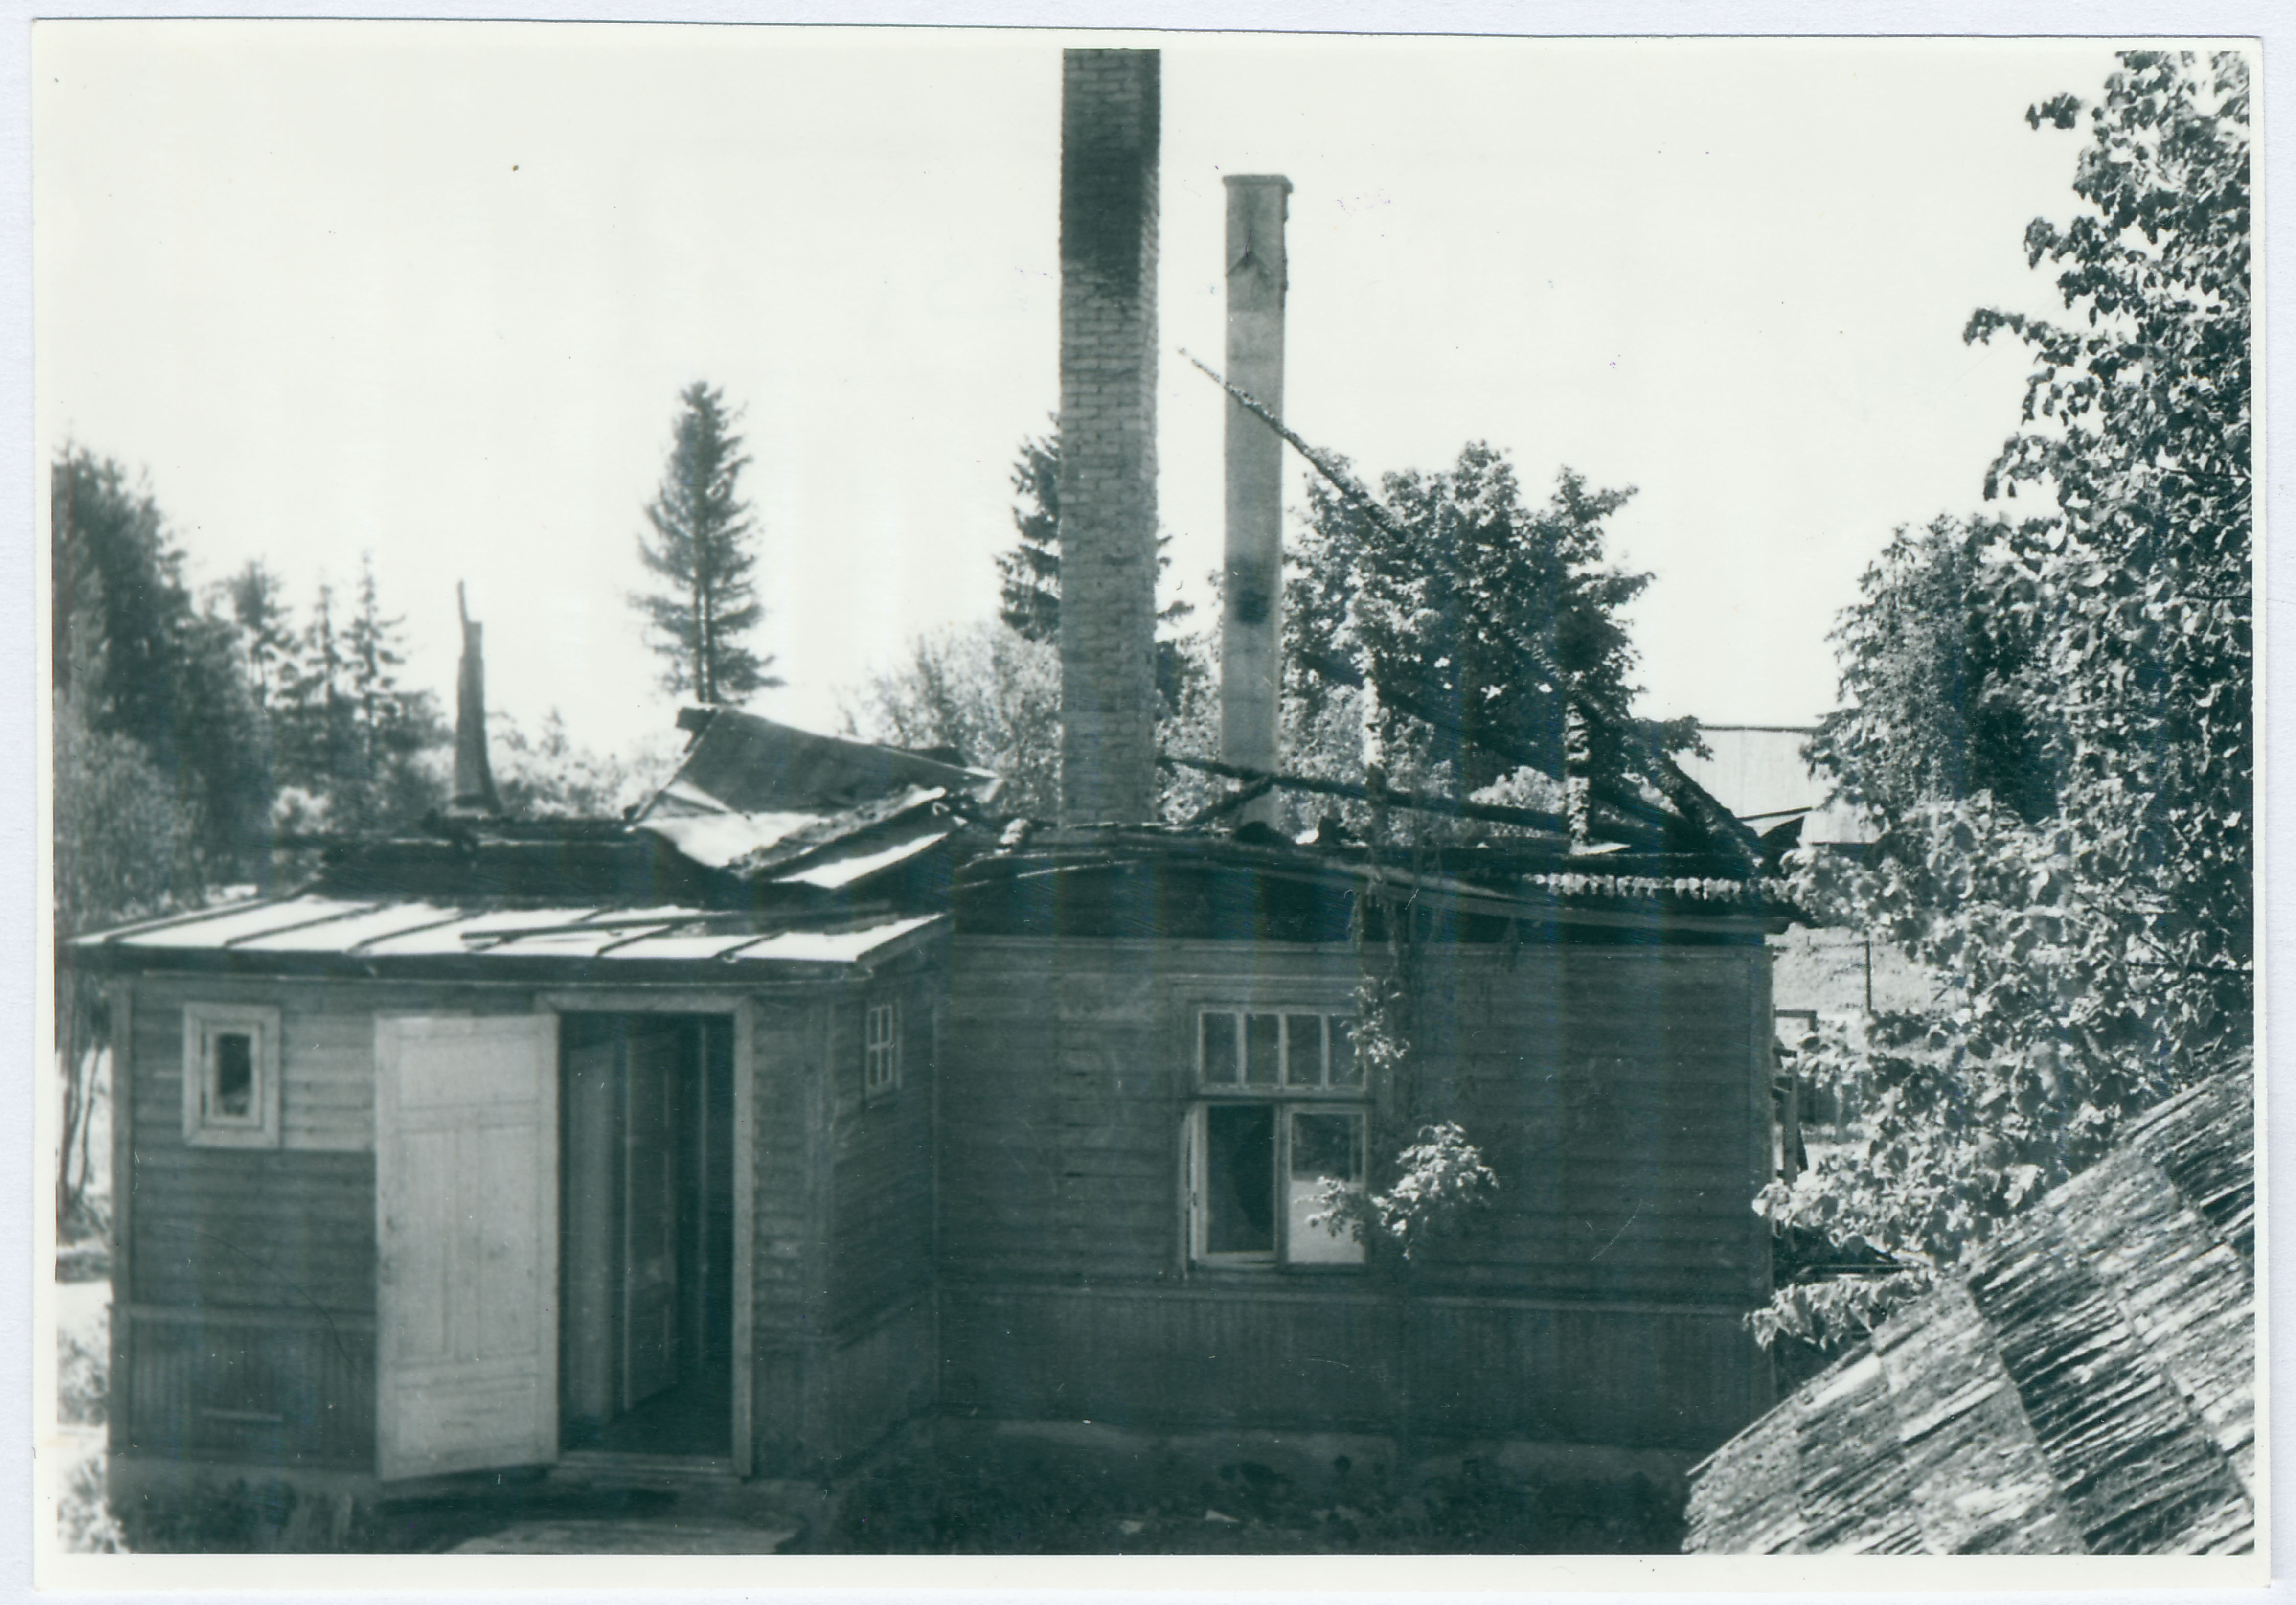 Põltsamaa raj. Päinurme jaoskonnahaigla pärast tulekahju: põlenud hoonete vähem kannatada saanud osa, 1958.a.